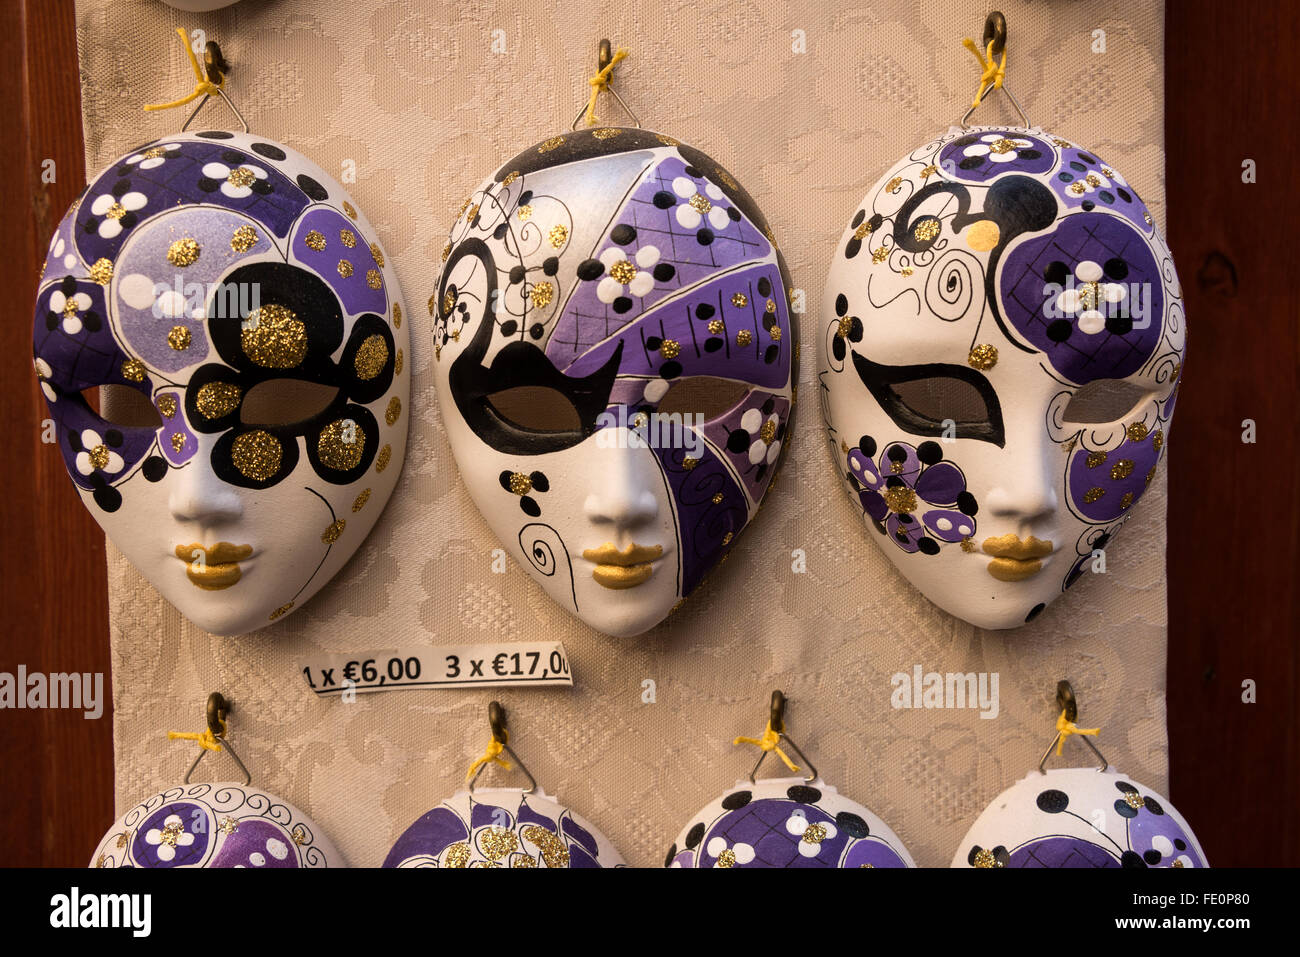 Une sélection de masques décoratifs vénitiens dans un magasin de fabrication de masques fait à la main/studio d'art appelé ‘CA’ Macana’ dans une rue étroite, nommée Dorsoduro, in Banque D'Images